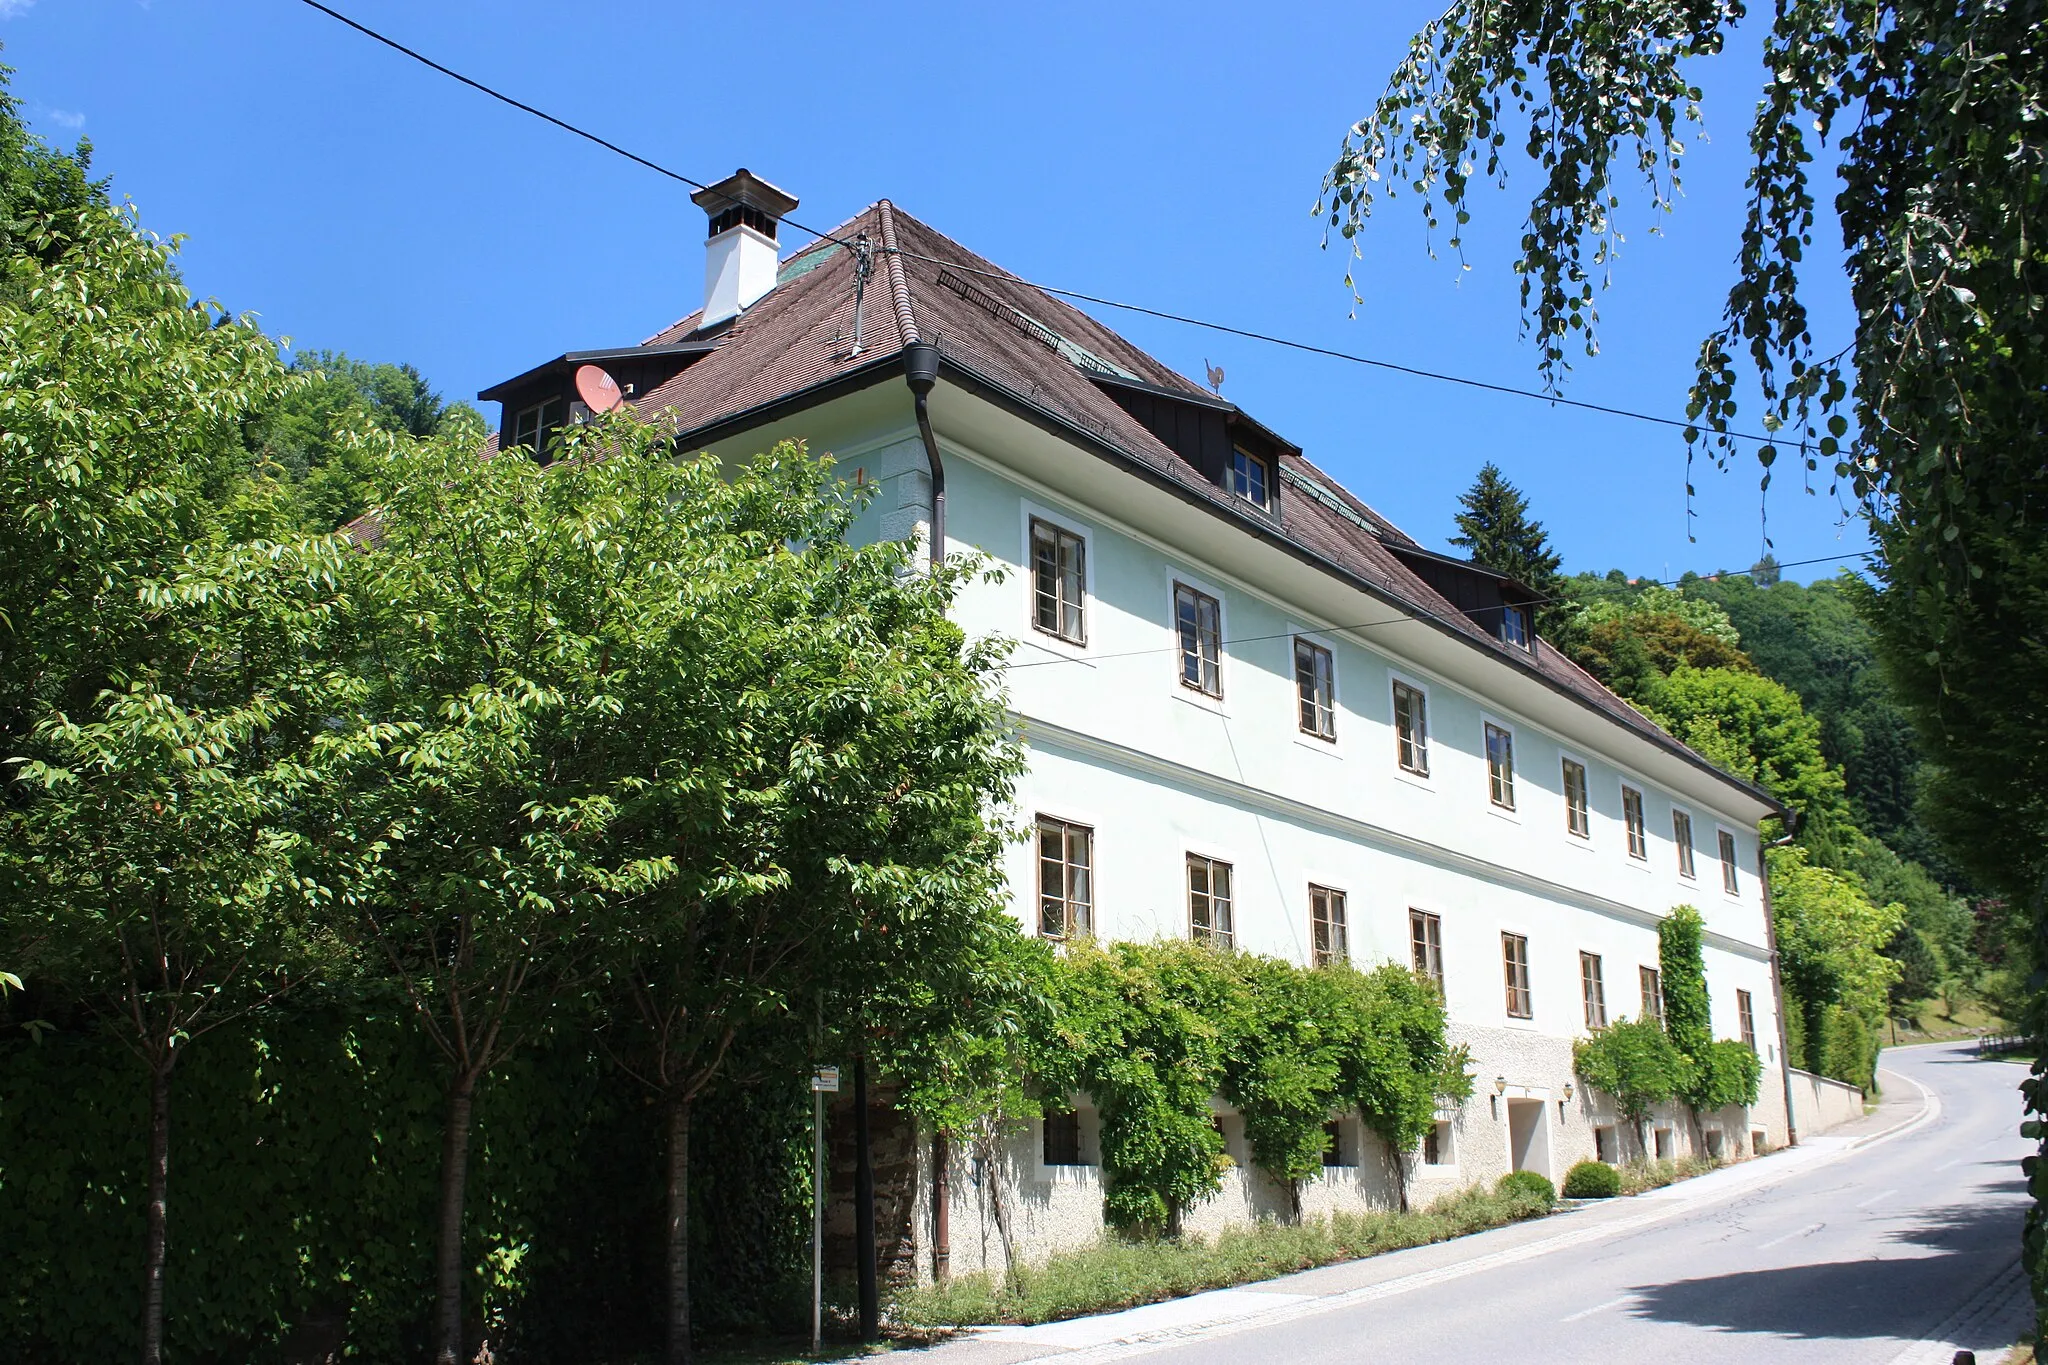 Photo showing: Zechnerhof
Locality:Lölling

Community:Hüttenberg